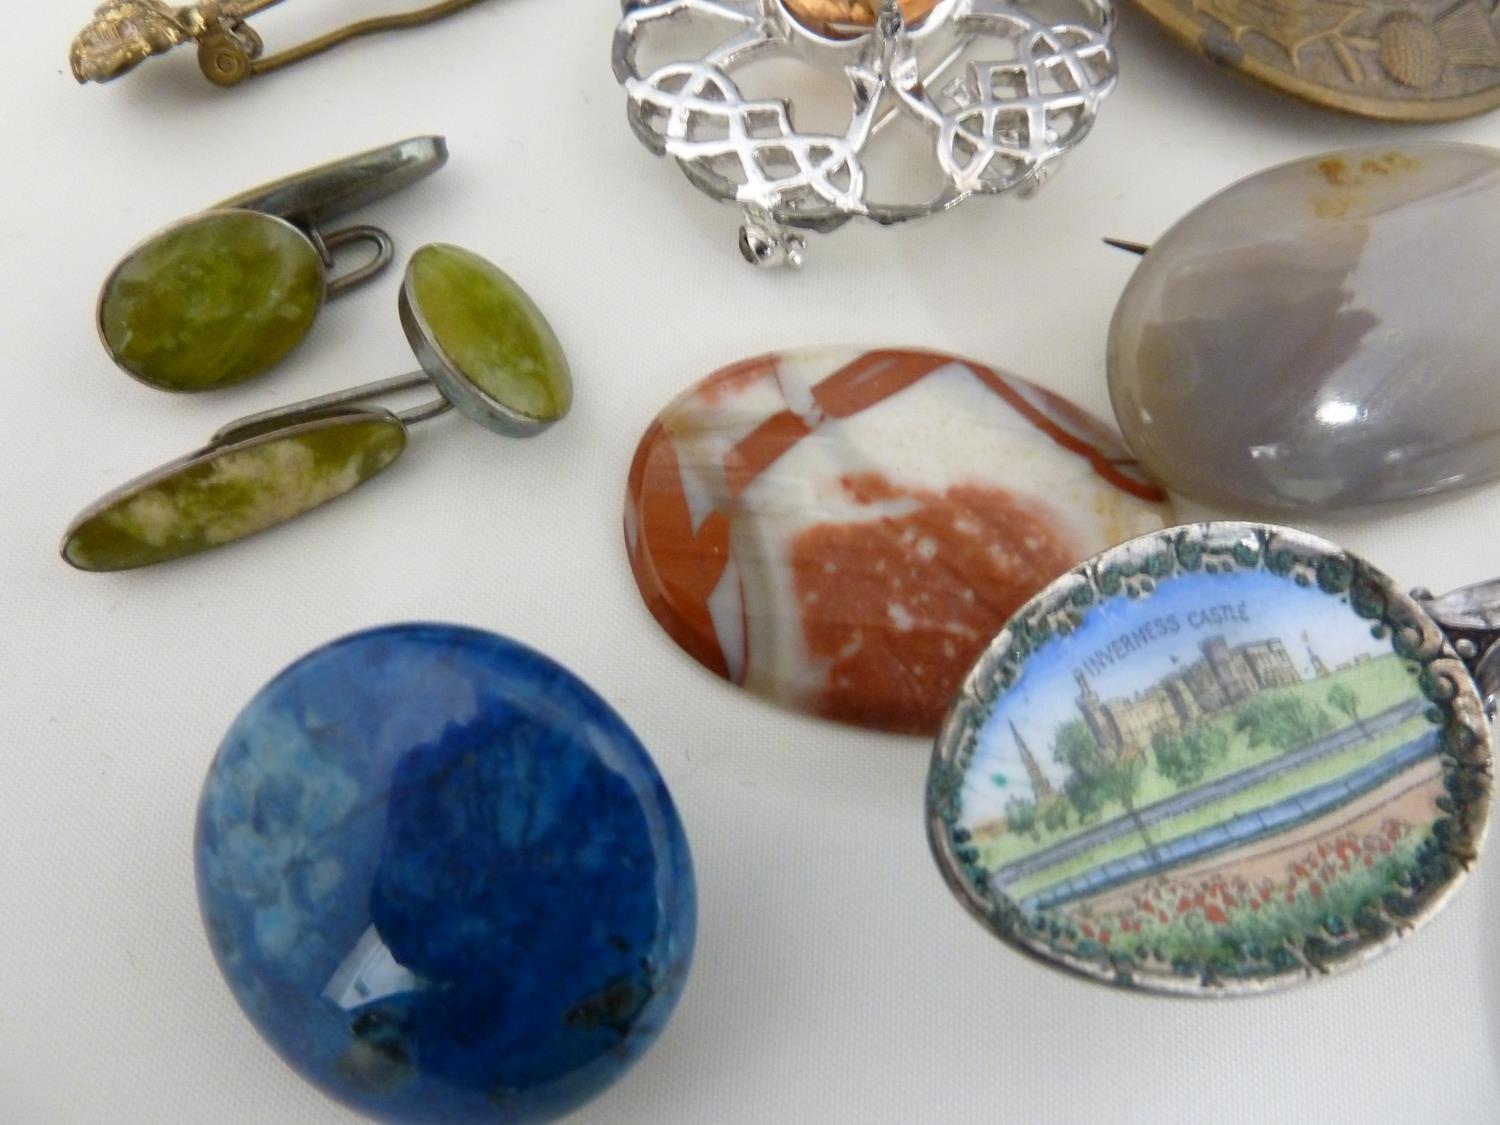 Scottish Interest - An Inverness enamelled souvenir spoon; a souvenir of Glasgow miniature charm - Image 4 of 16